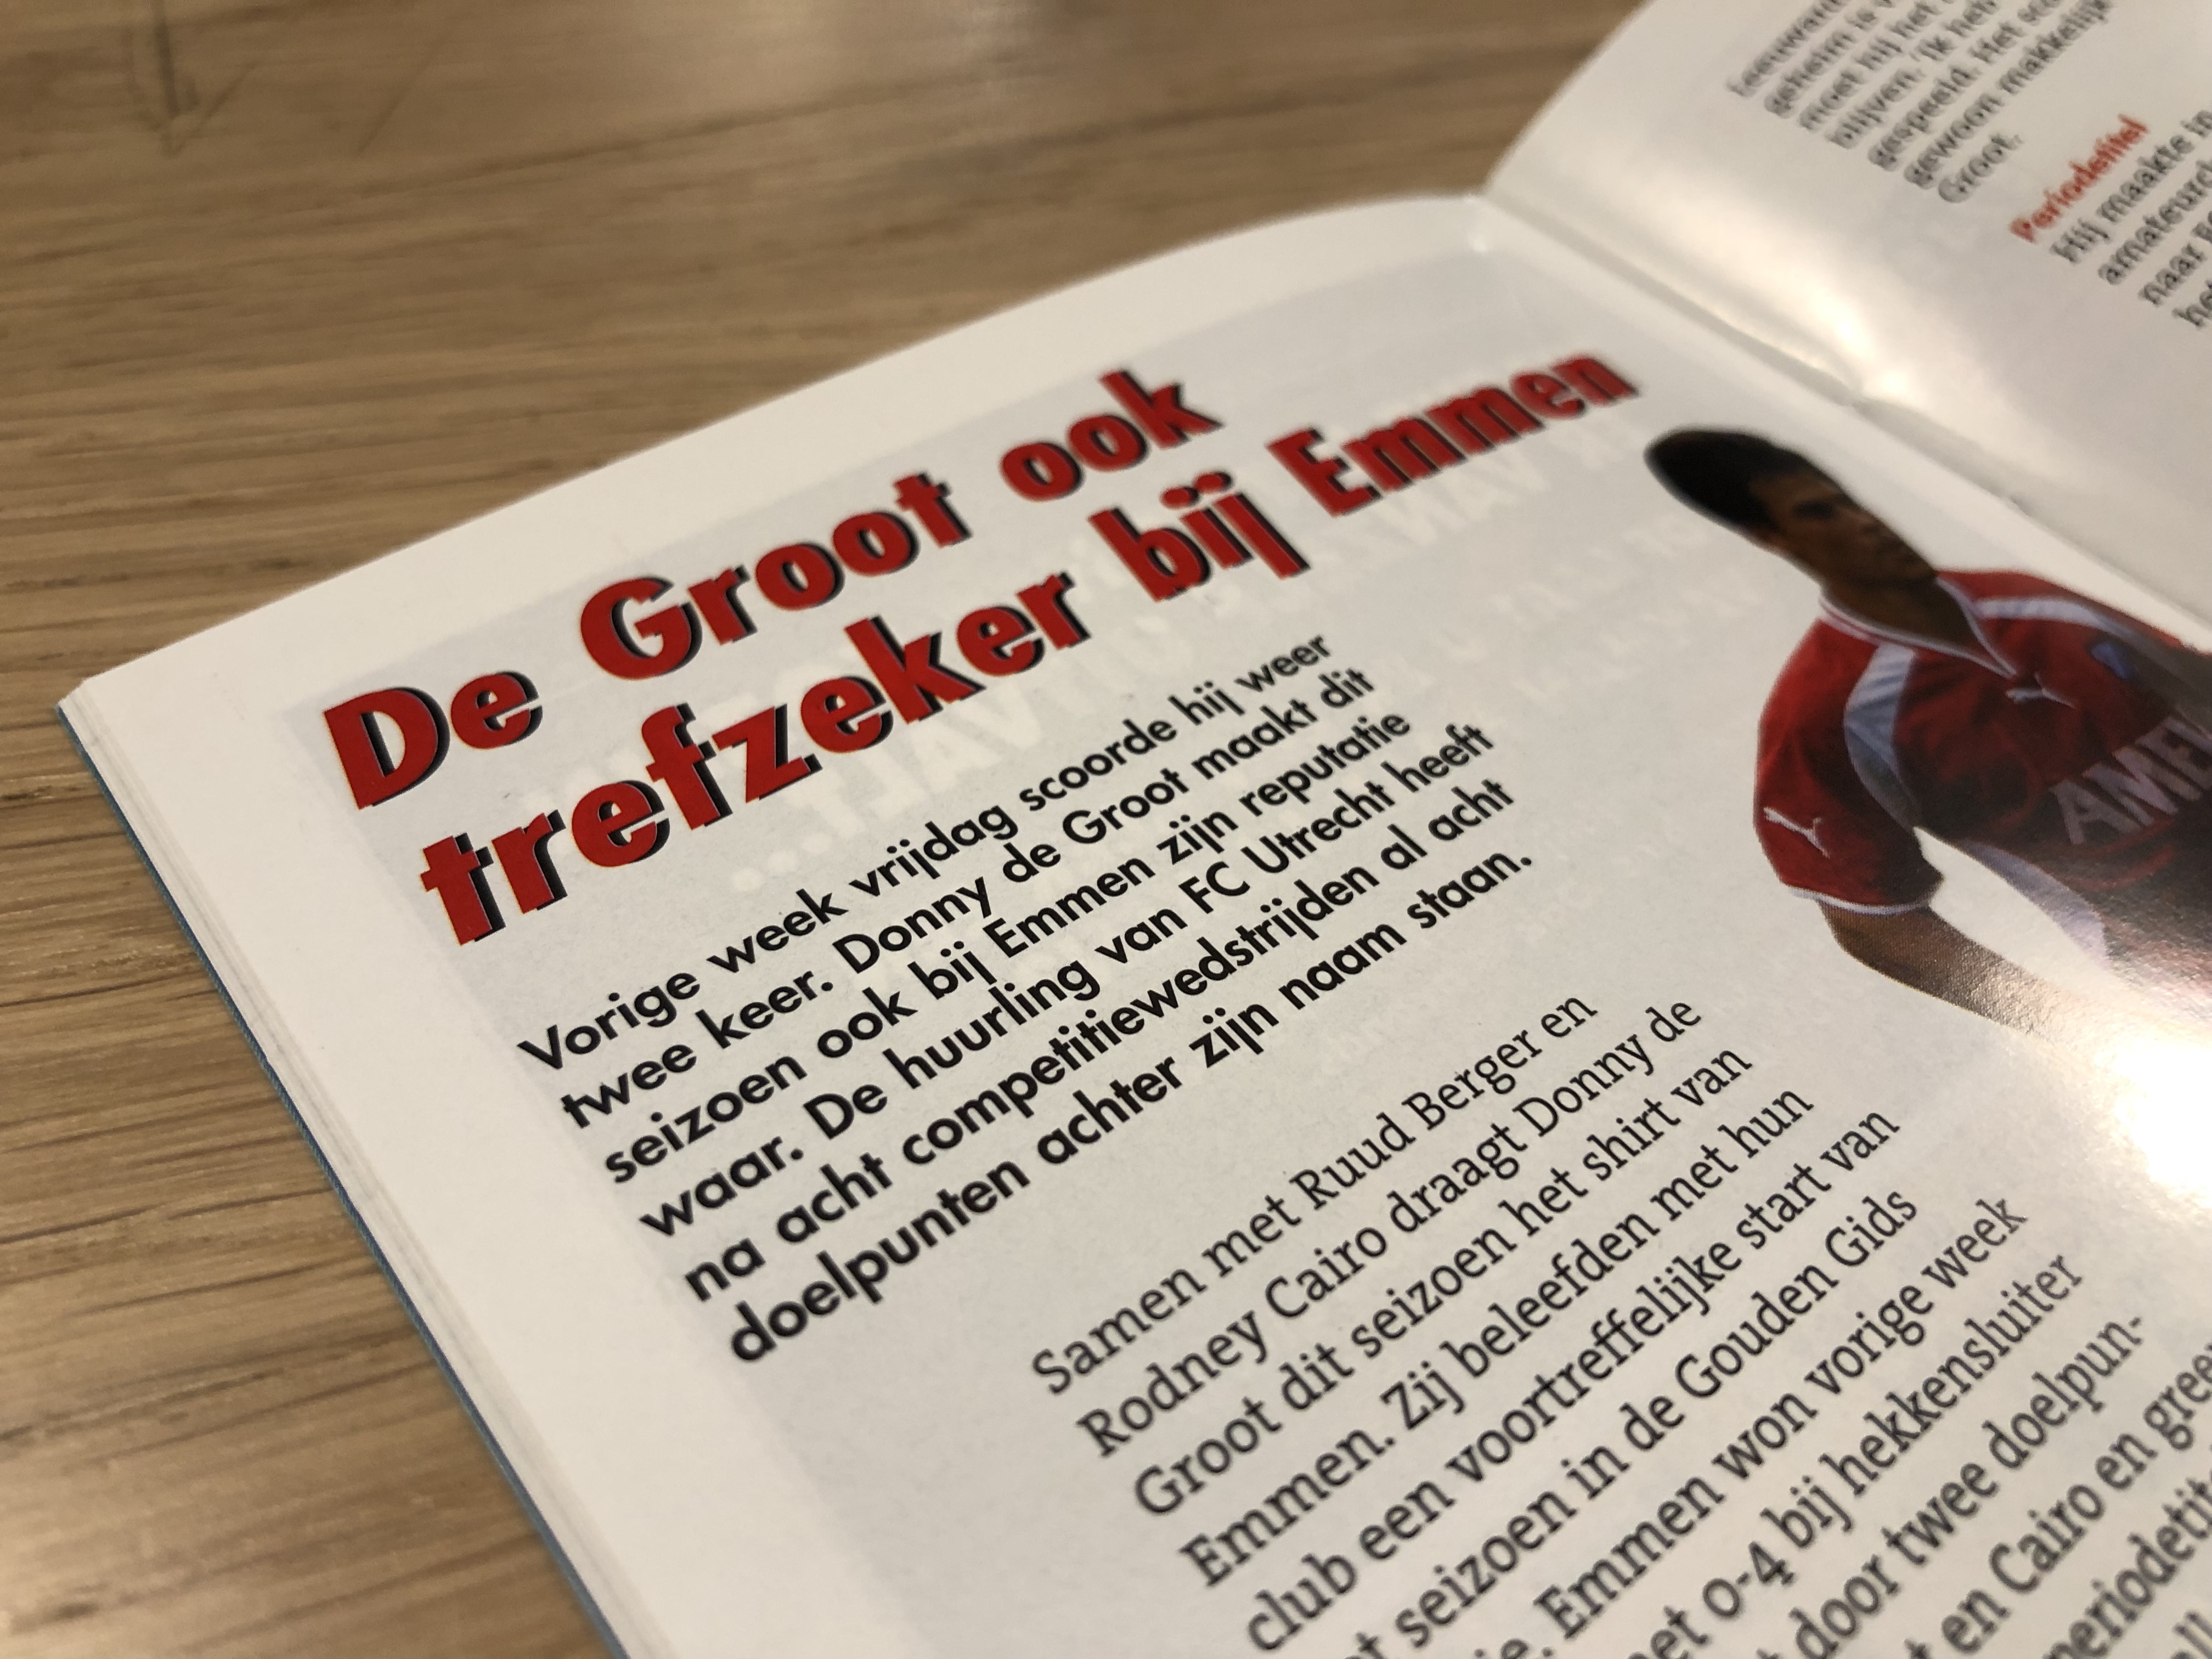 Een artikel over Donny de Groot in het programmaboekje dat op 27 oktober 2002 werd uitgegeven.